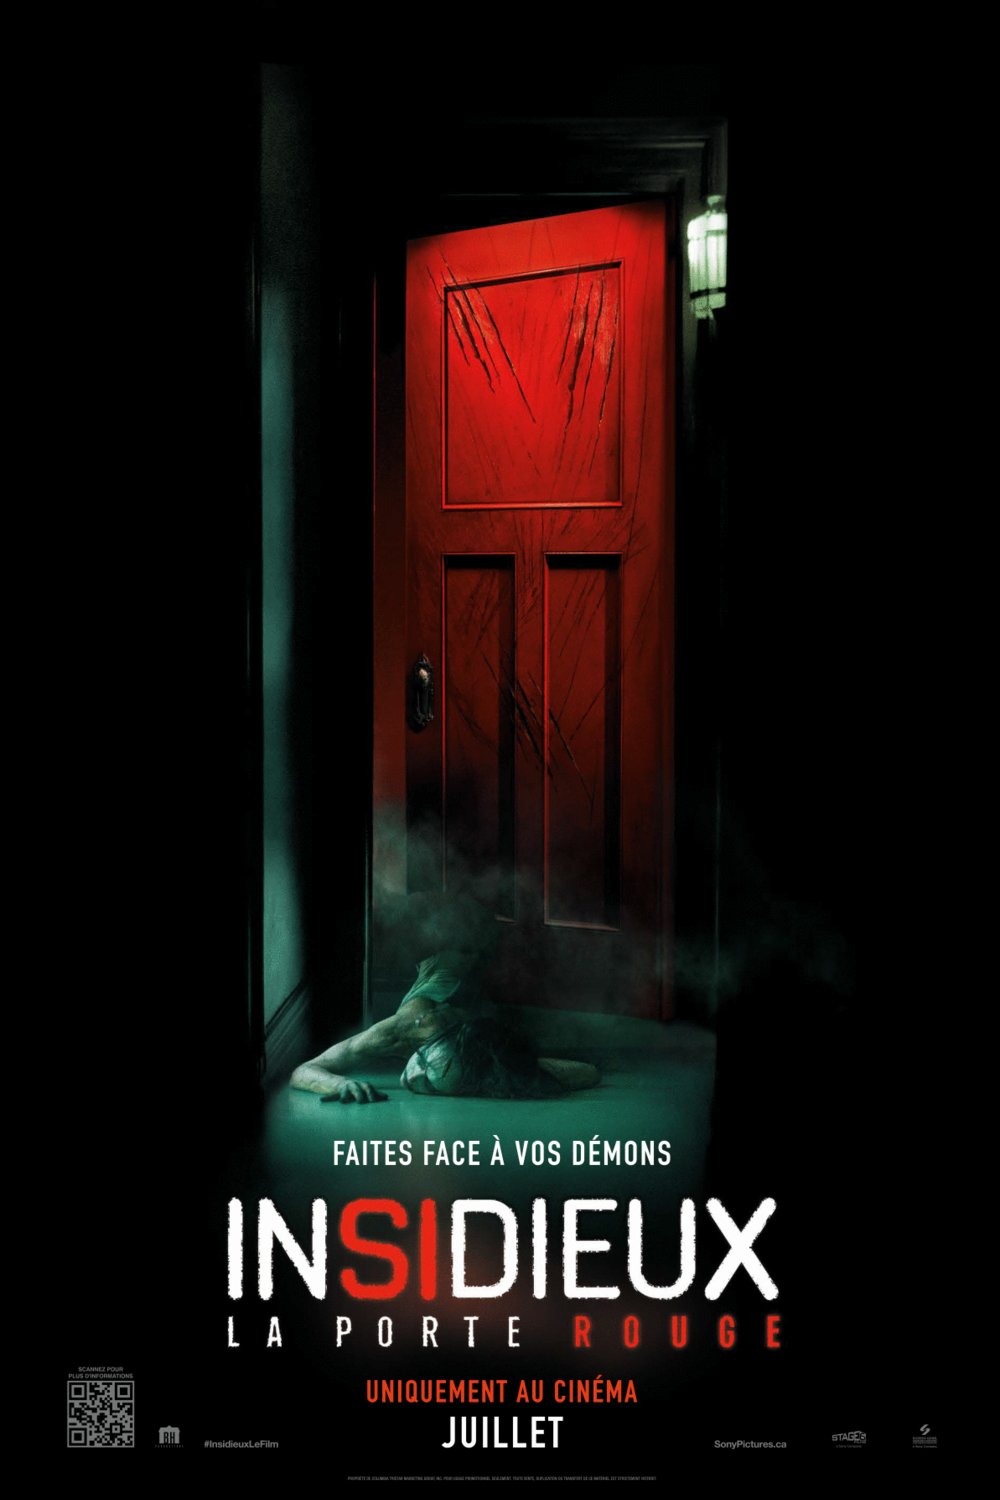 L'affiche du film Insidious 5